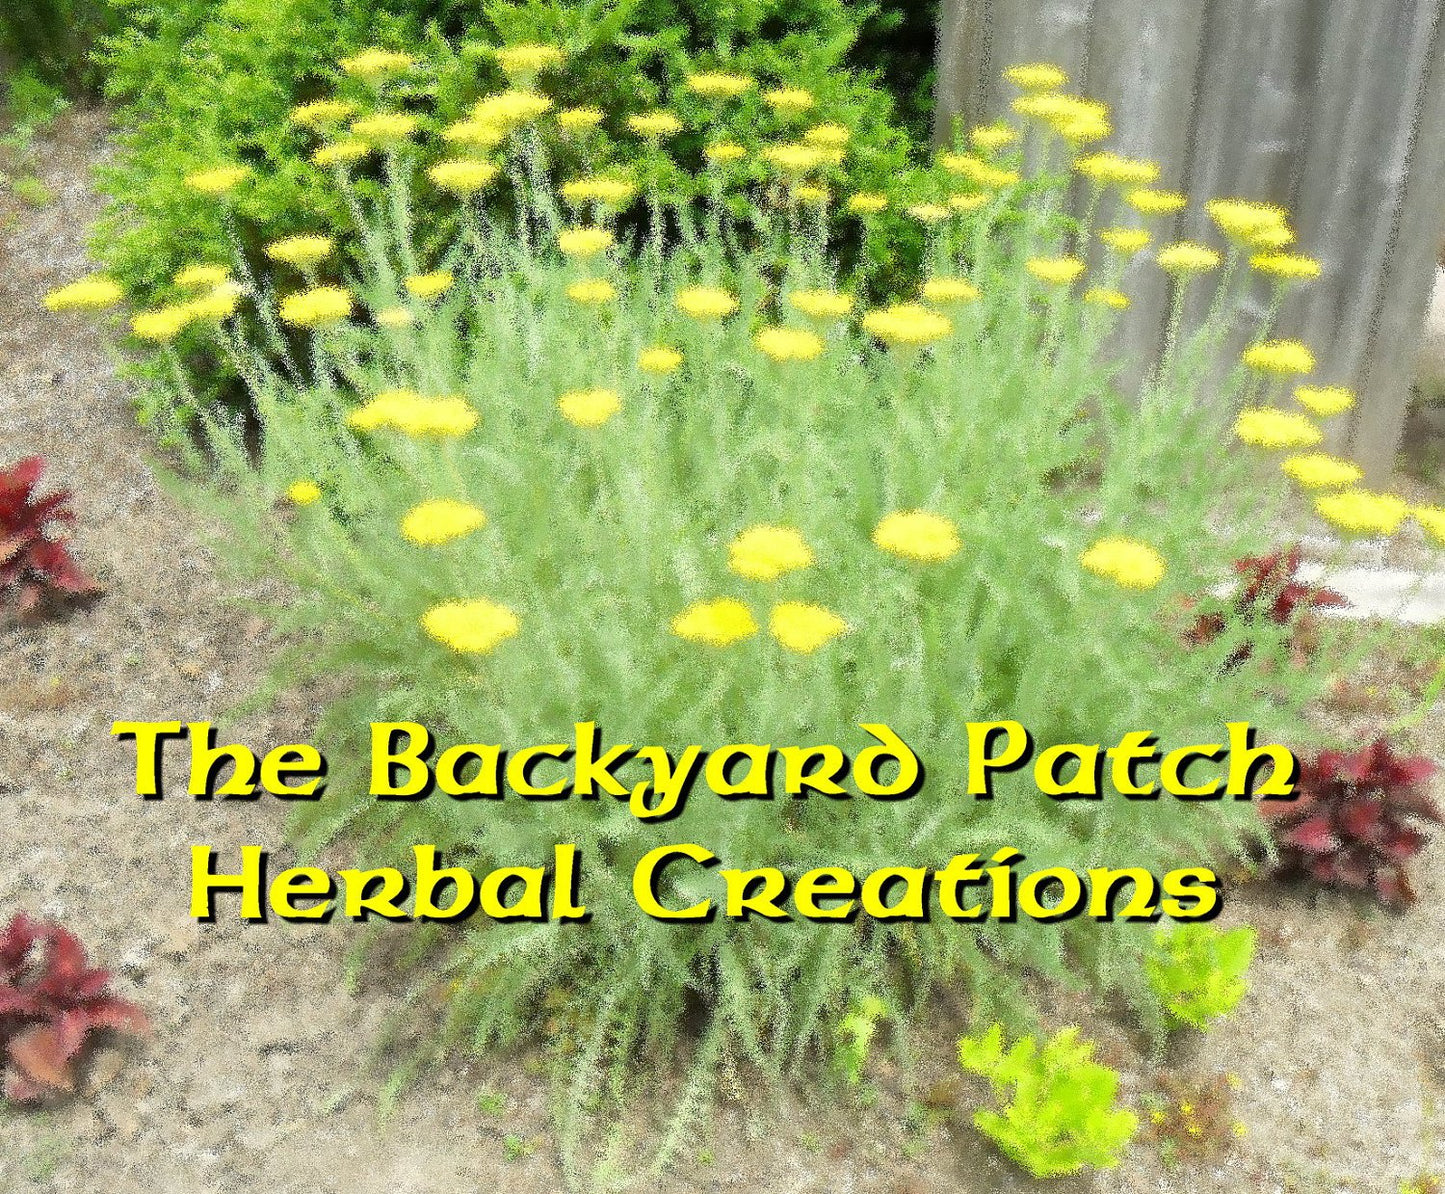 https://backyard-patch-herbs.myshopify.com/cdn/shop/products/il_fullxfull.262287516_e0ca0951-0aea-4102-999e-b9711fb48708.jpg?v=1546738730&width=1445